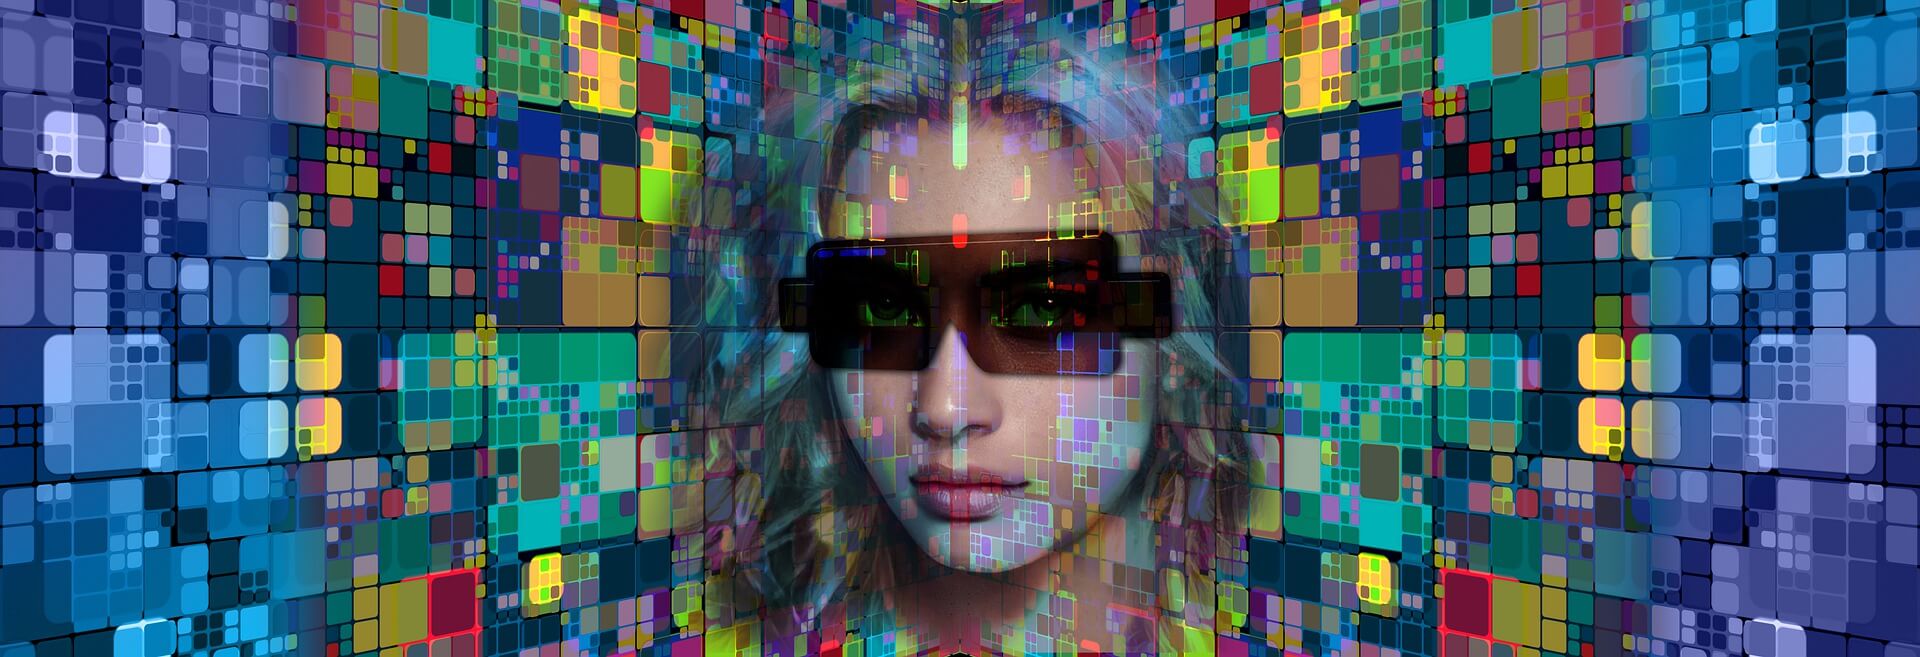 图片展示了一位戴着墨镜的女性面部，背景是由多彩像素块组成的数字化图案。